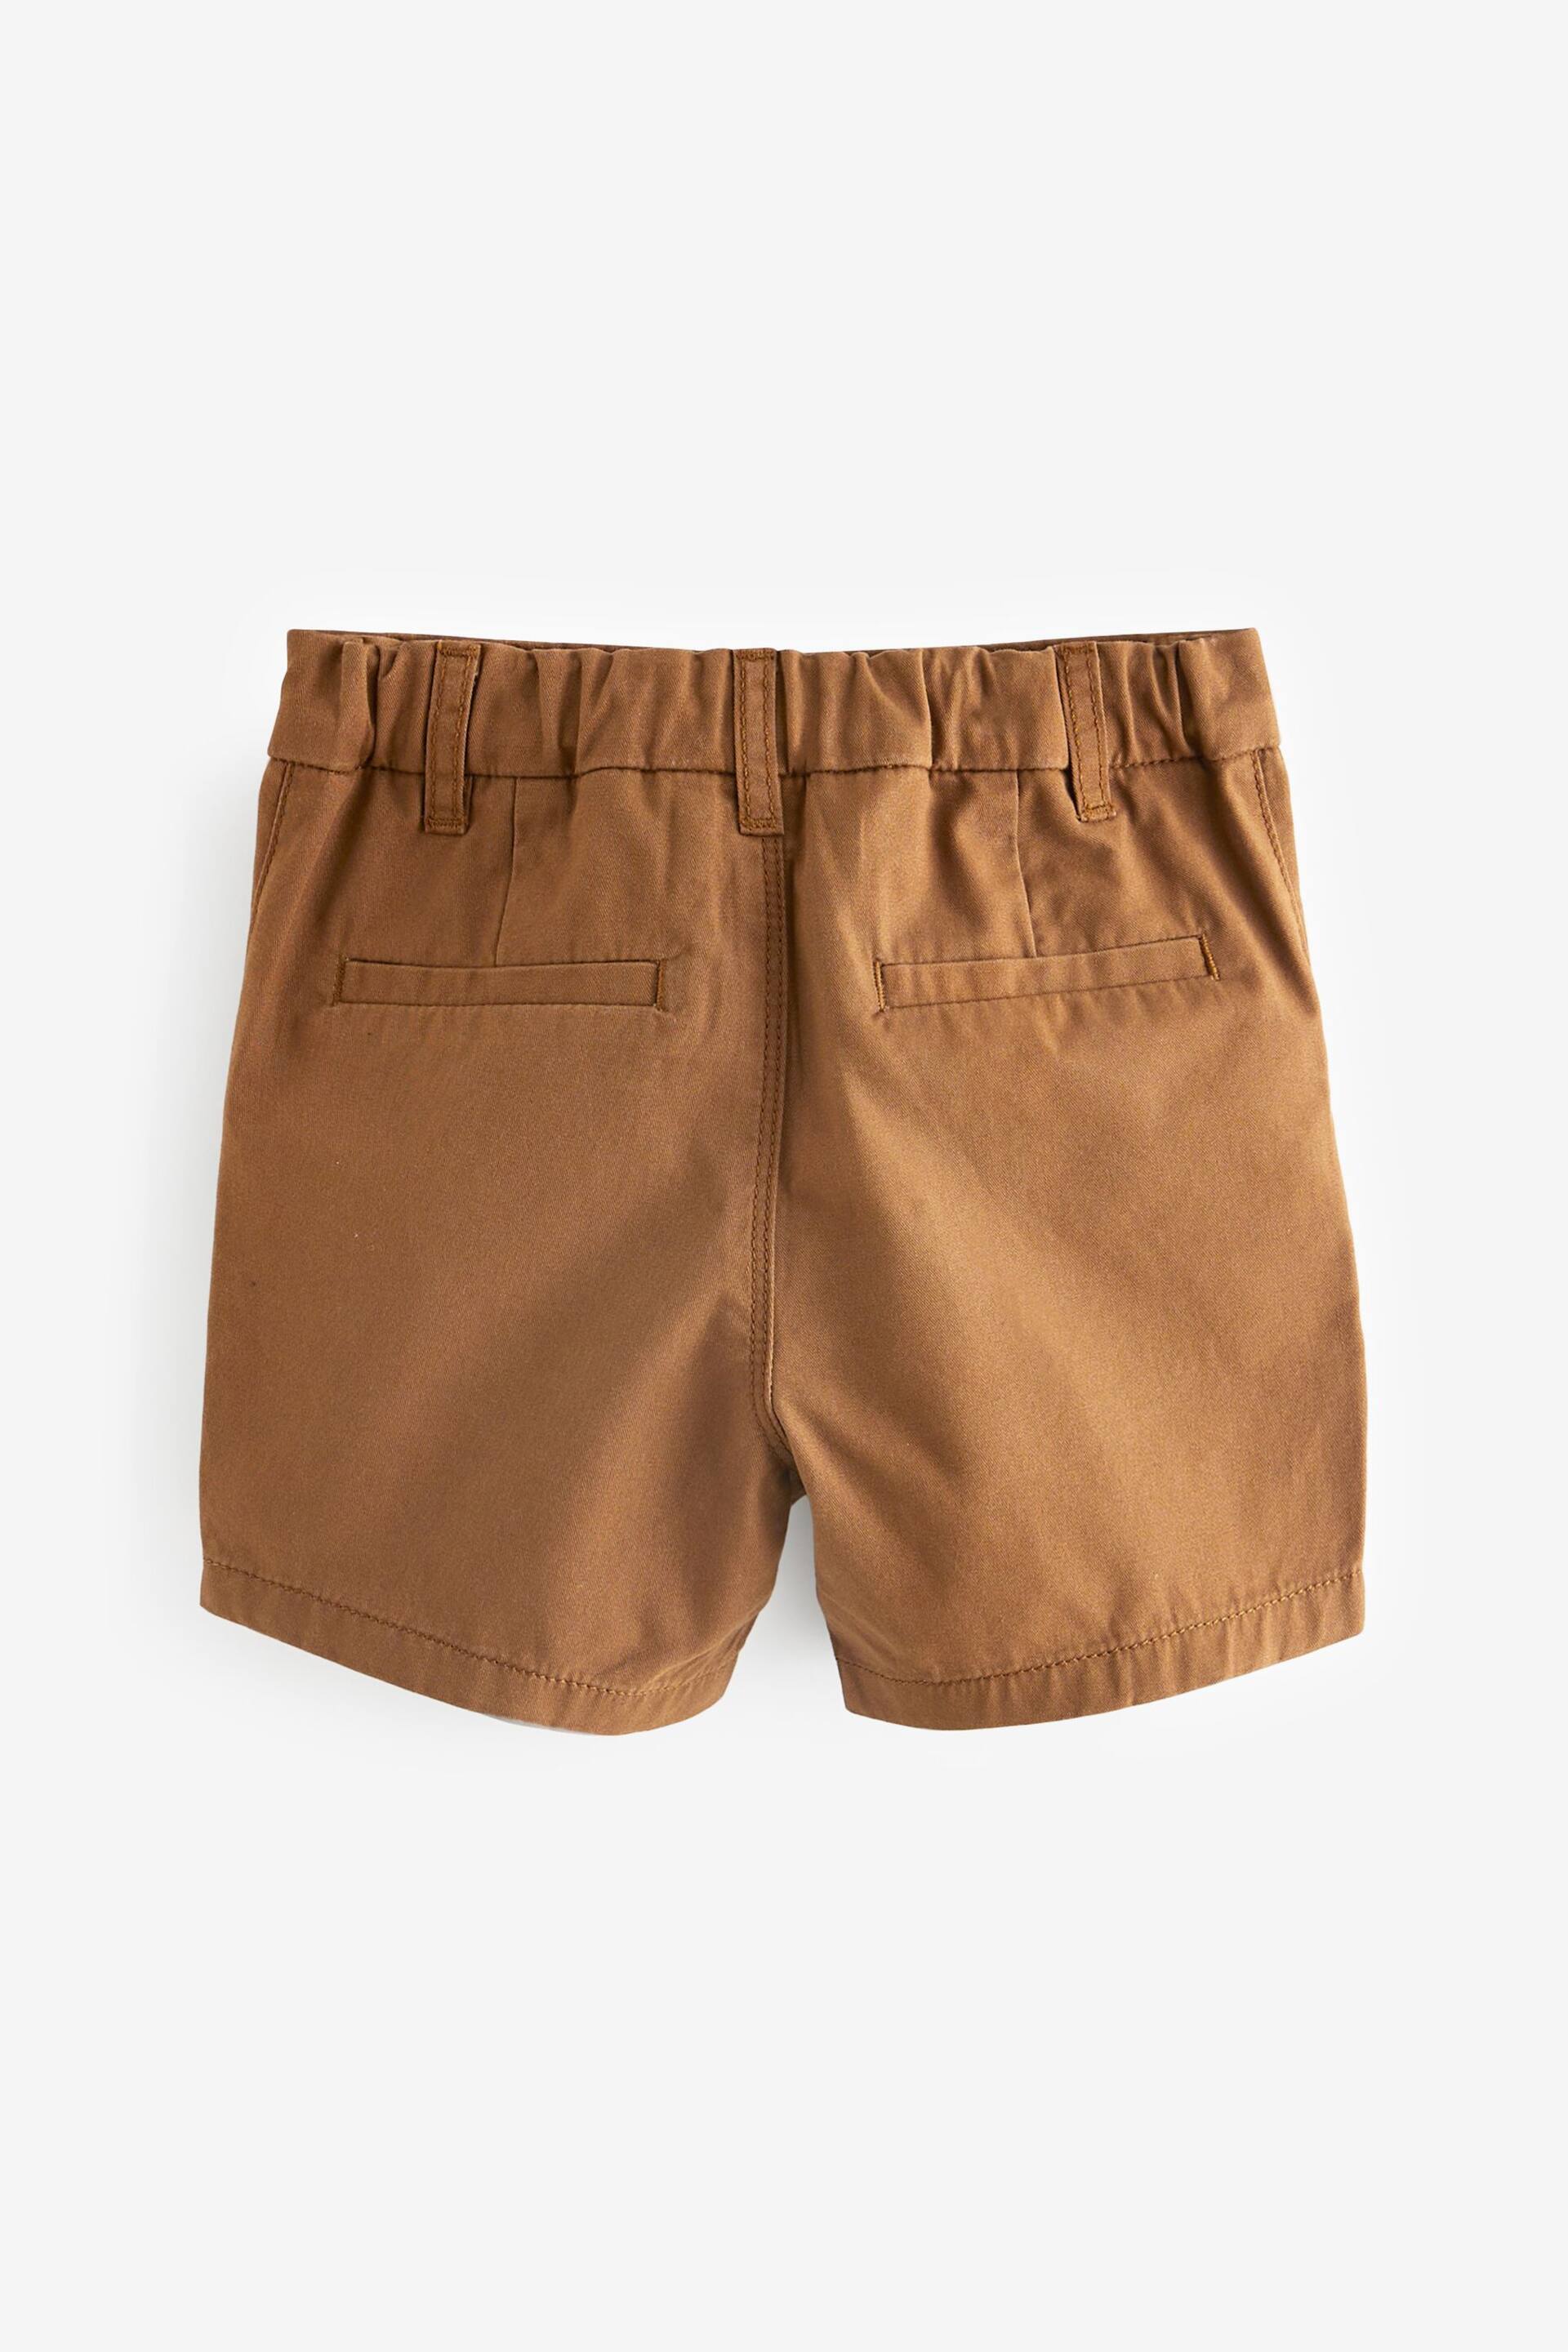 Tan Brown Chinos Shorts (3mths-7yrs) - Image 6 of 7